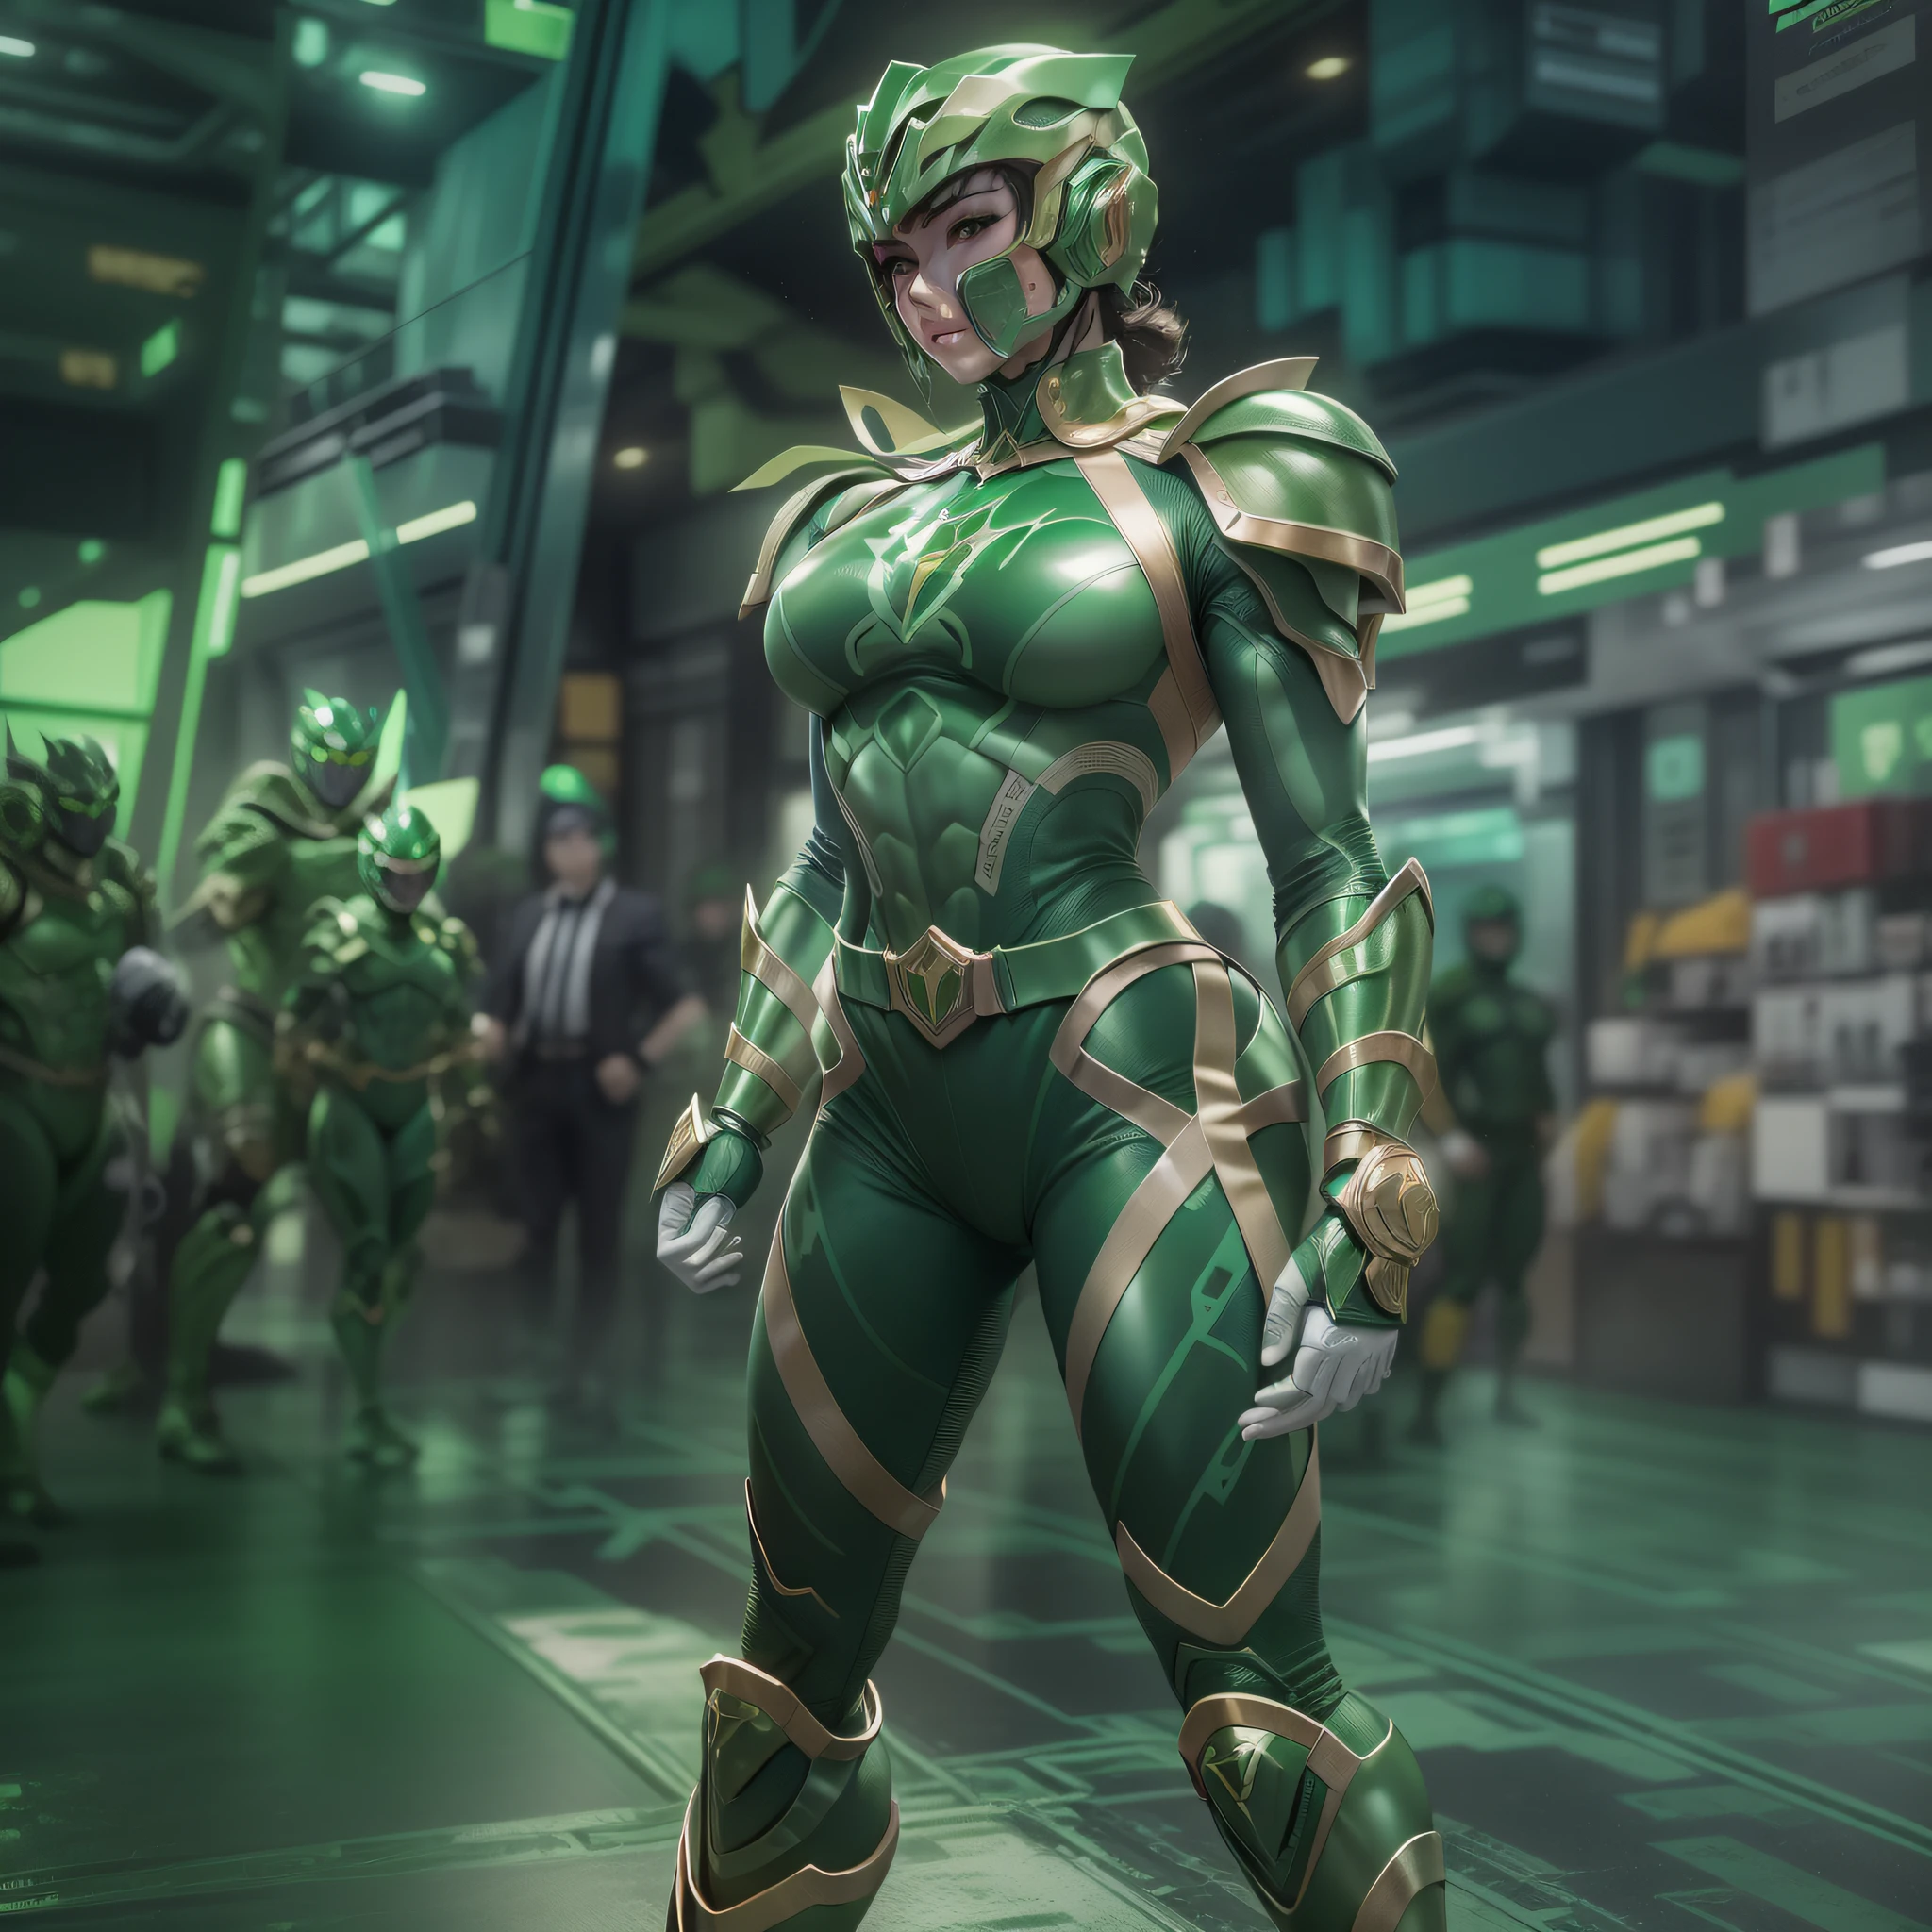 a close up of a muscle beautifull girl in a green power 部隊 costume, green power 部隊, 緑の脚, metallic 緑の鎧, 緑色のバトルアーマーを着ている, 緑の鎧, power 部隊, ズームアウトした全身, グリーンボディ, 全身のクローズアップショット, ズームアウトショット, 宇宙ヒーローの衣装を着て, 部隊, フルユニフォーム, 特撮